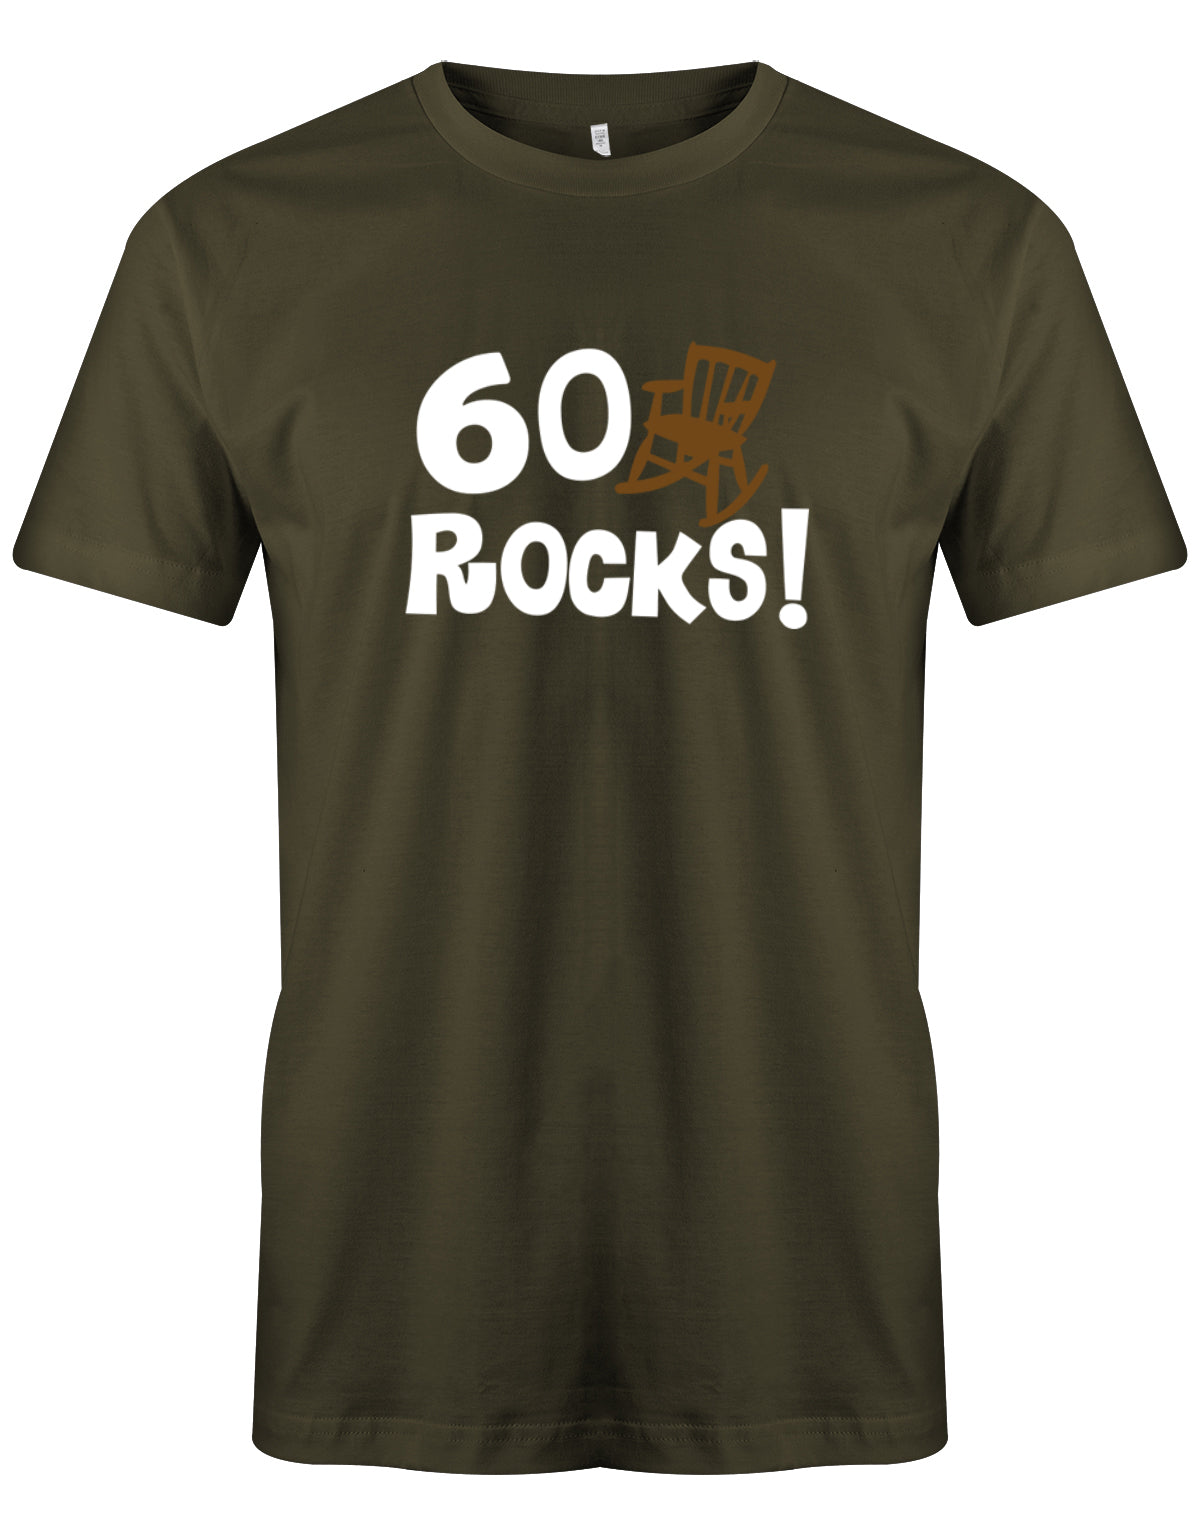 Lustiges T-Shirt zum 60. Geburtstag für den Mann Bedruckt mit 60 Rocks! Schaukelstuhl Army